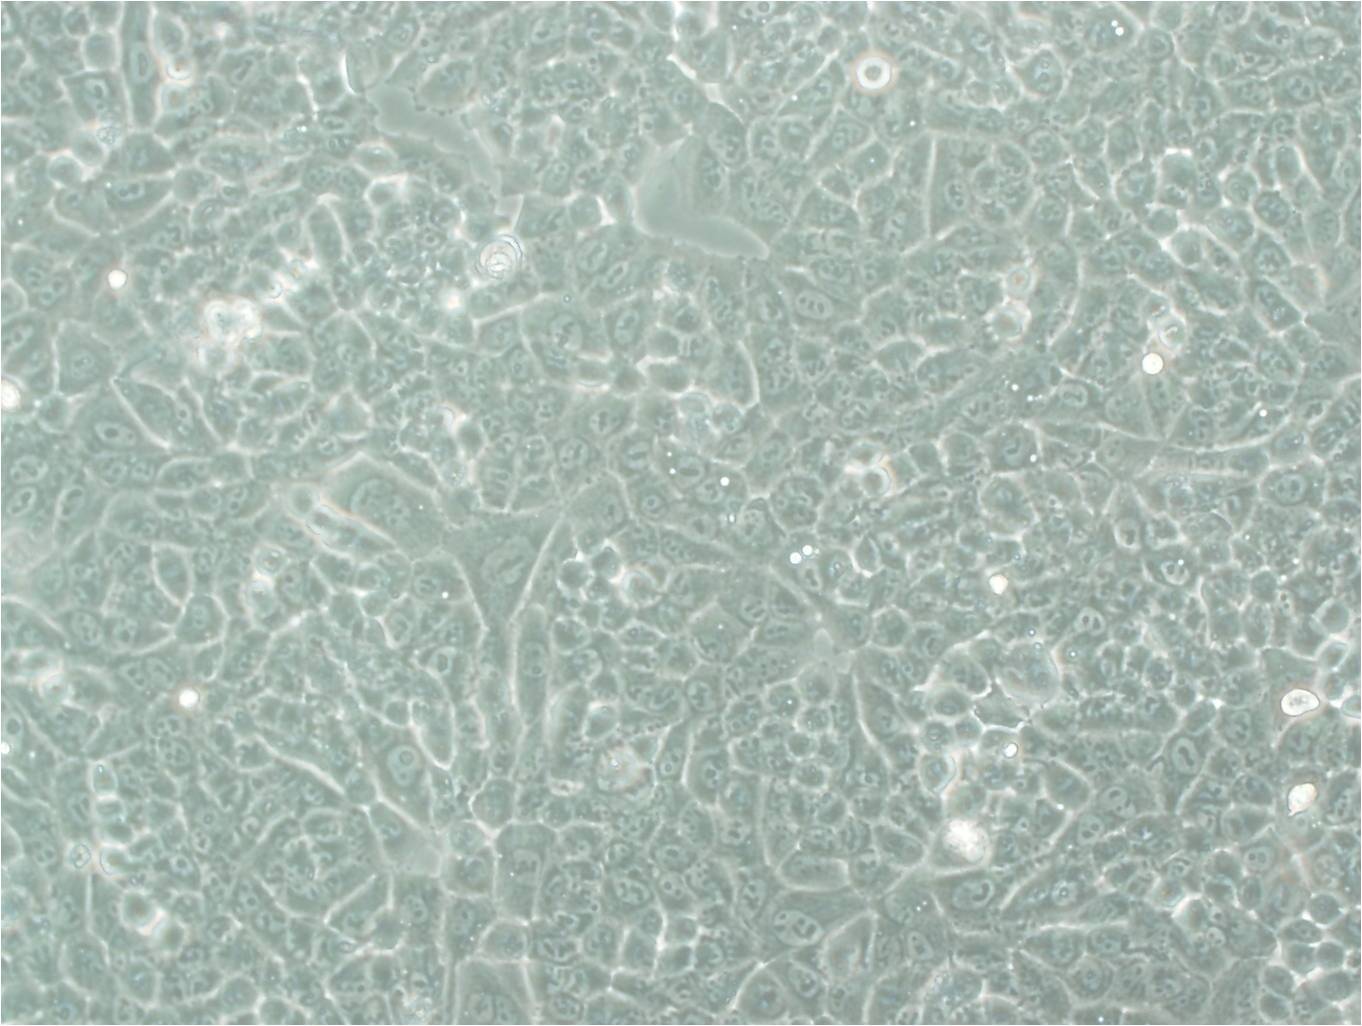 TE-6 Cells(赠送Str鉴定报告)|人食管癌细胞